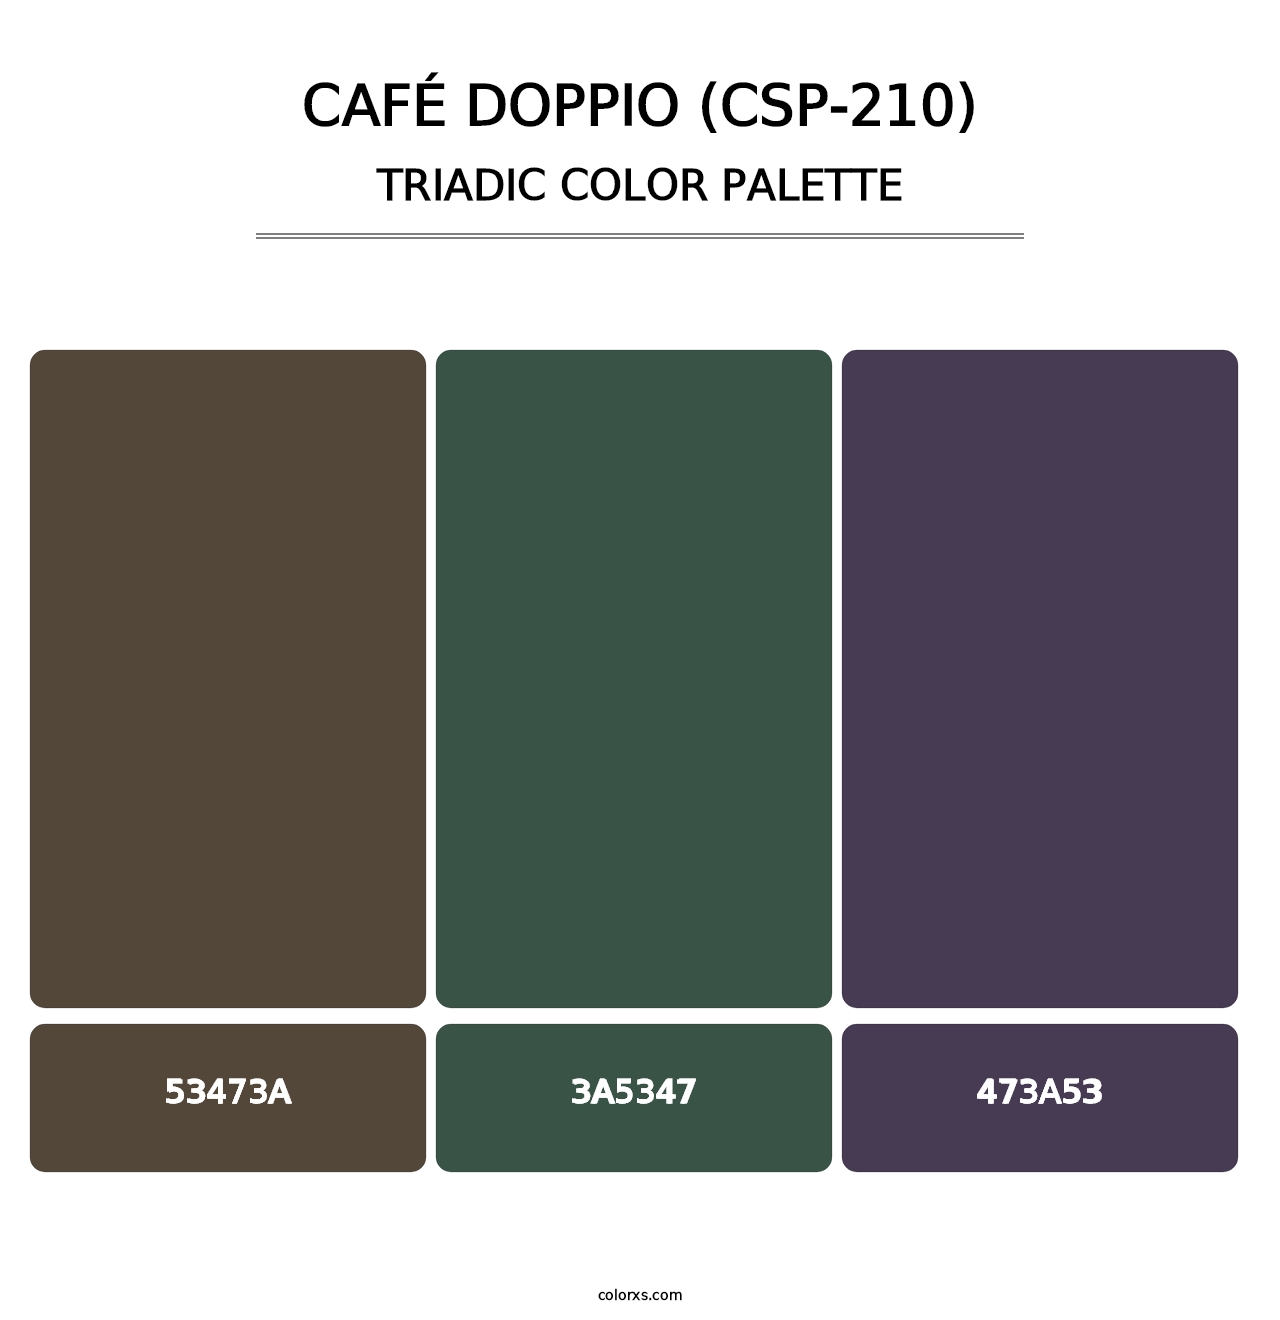 Café Doppio (CSP-210) - Triadic Color Palette